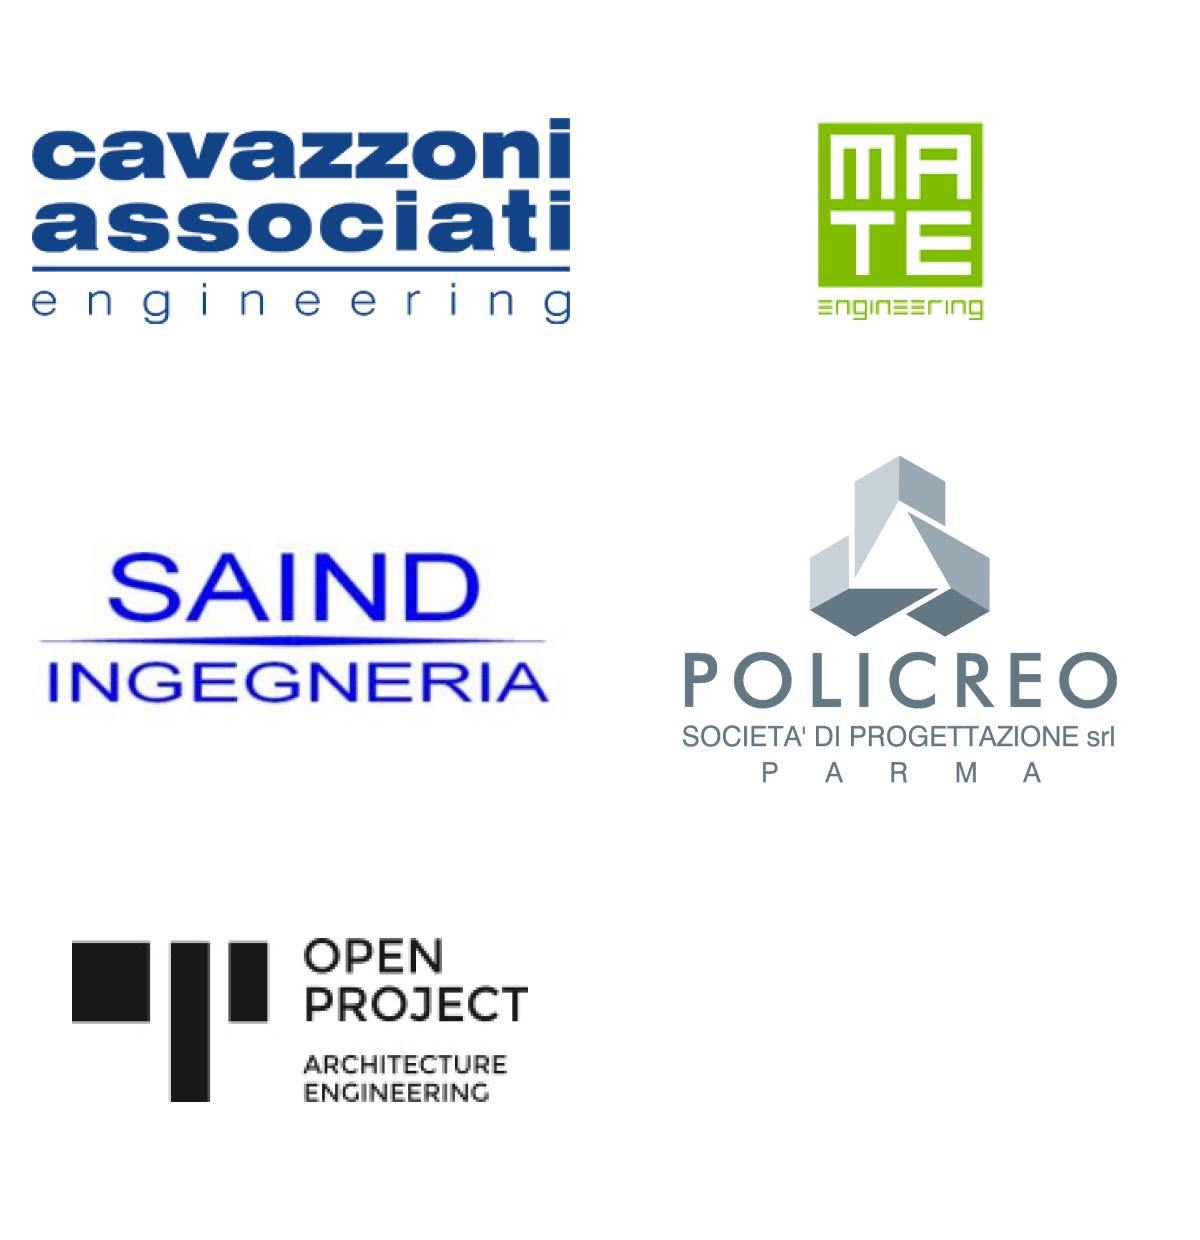 Immagini top brand colonna 4: Cavazzoni Associati engineering, Mate engineering, Said ingegneria, Policreo società di progettazione srl, Open Project.